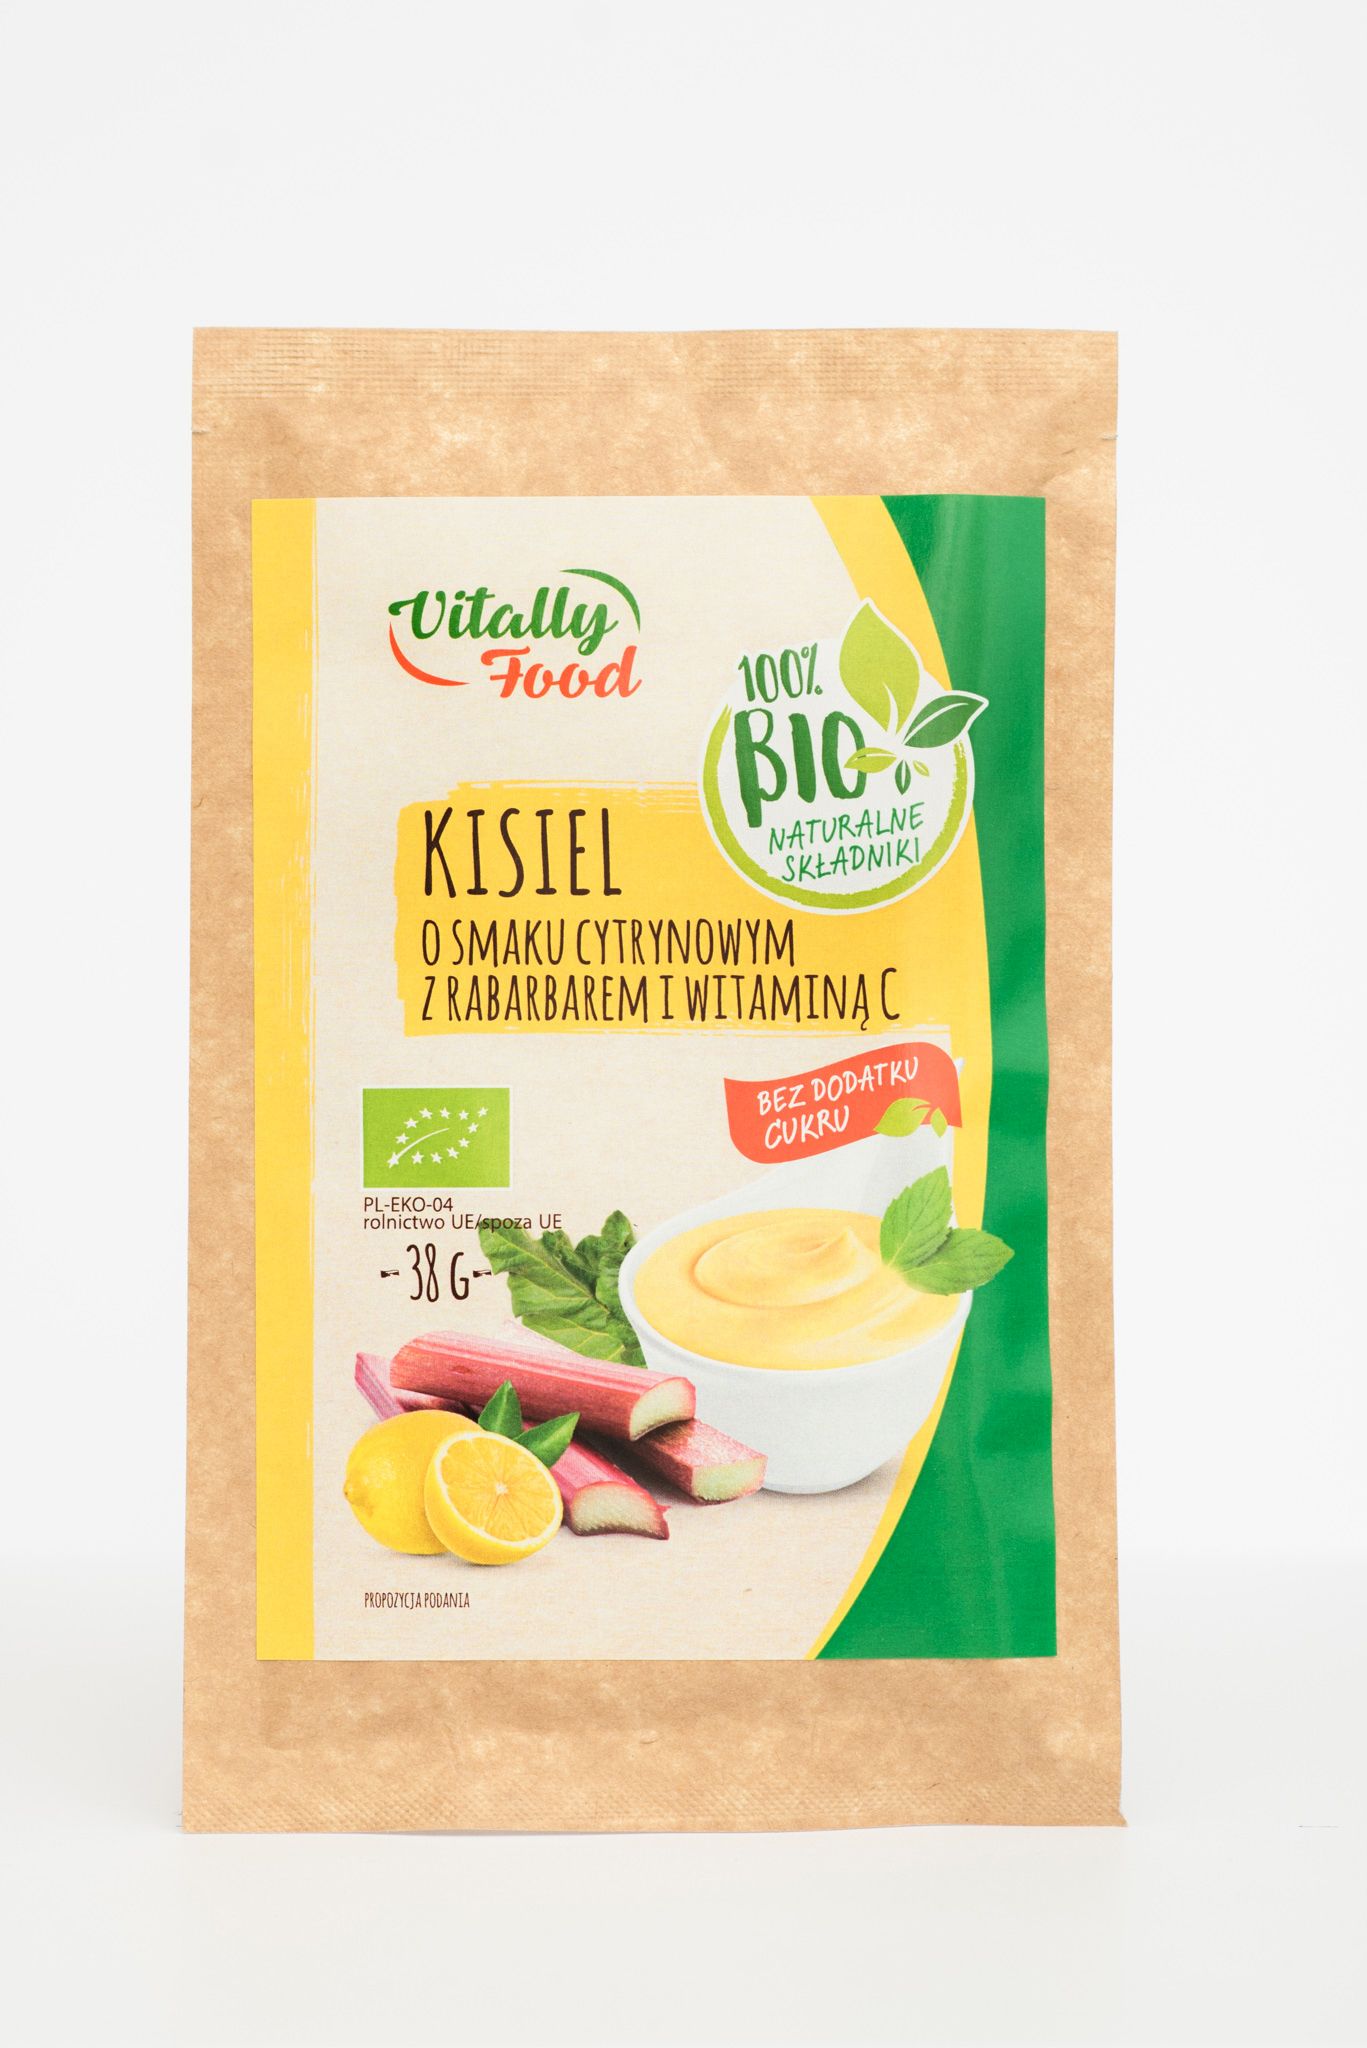 BIO Kisiel smak cytryna z rabarbar i Wit. C 38g Vitally Food